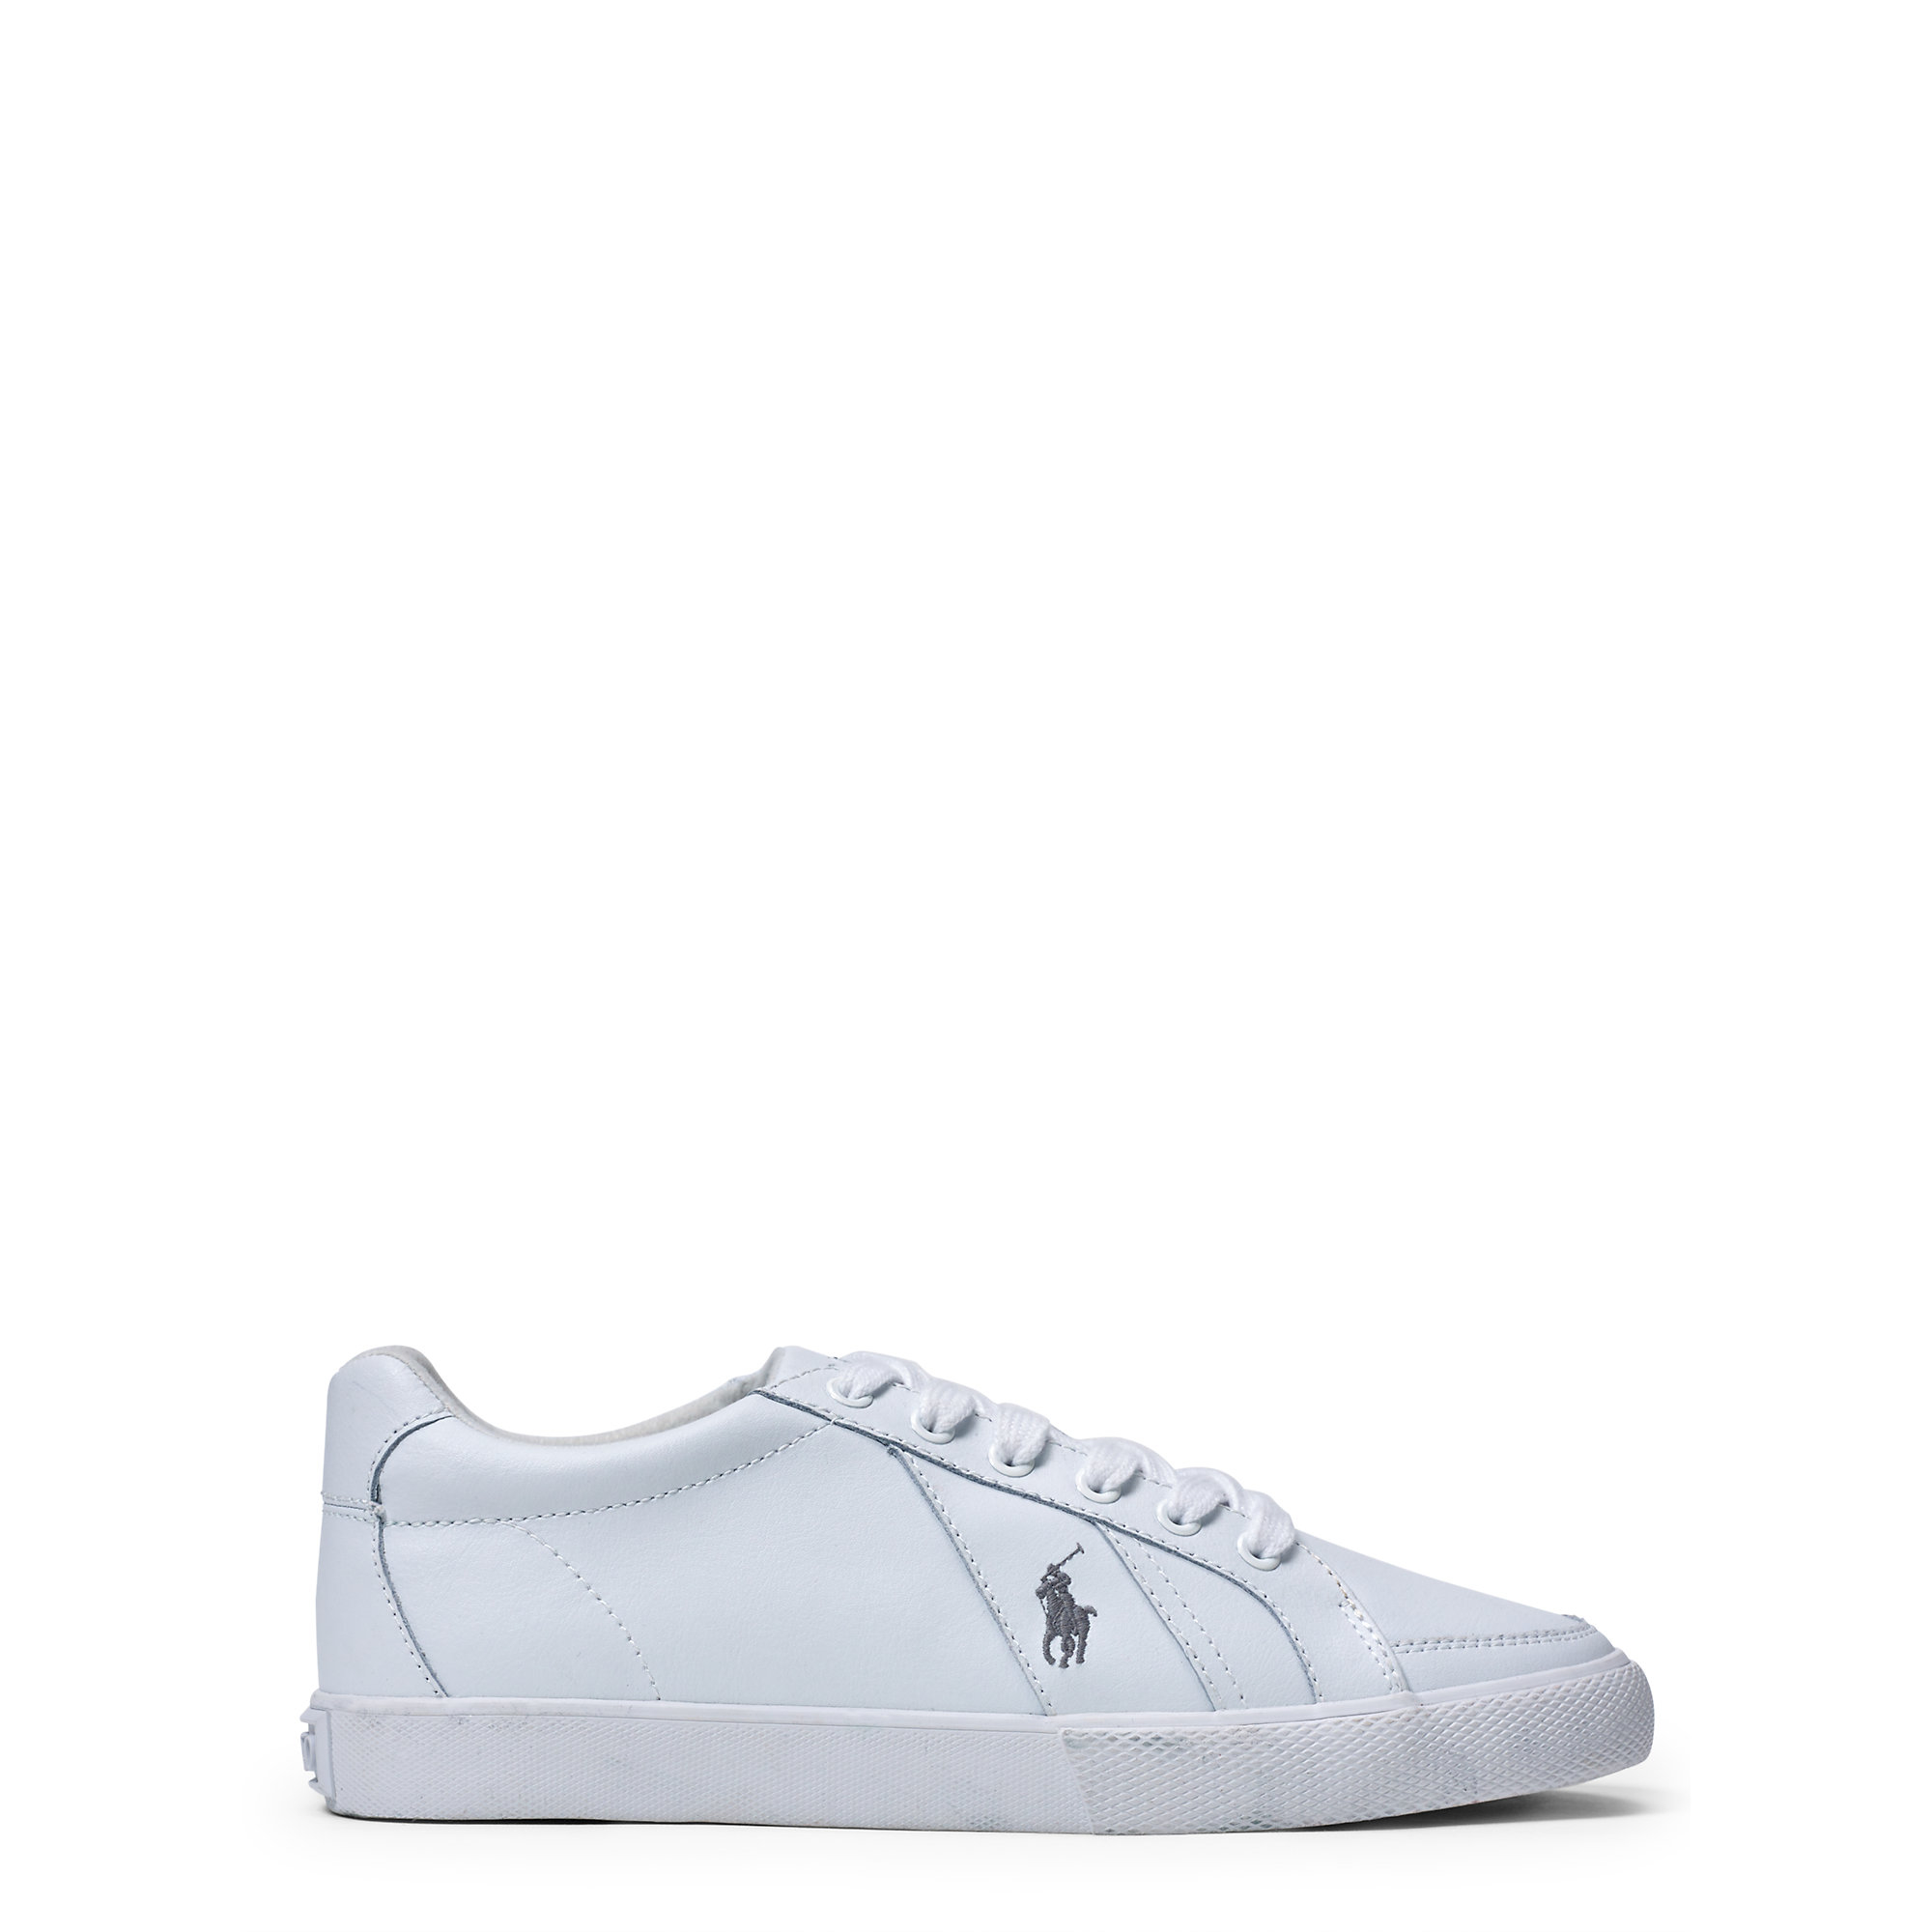 Lyst - Polo Ralph Lauren Hugh Leather Sneaker in White for Men